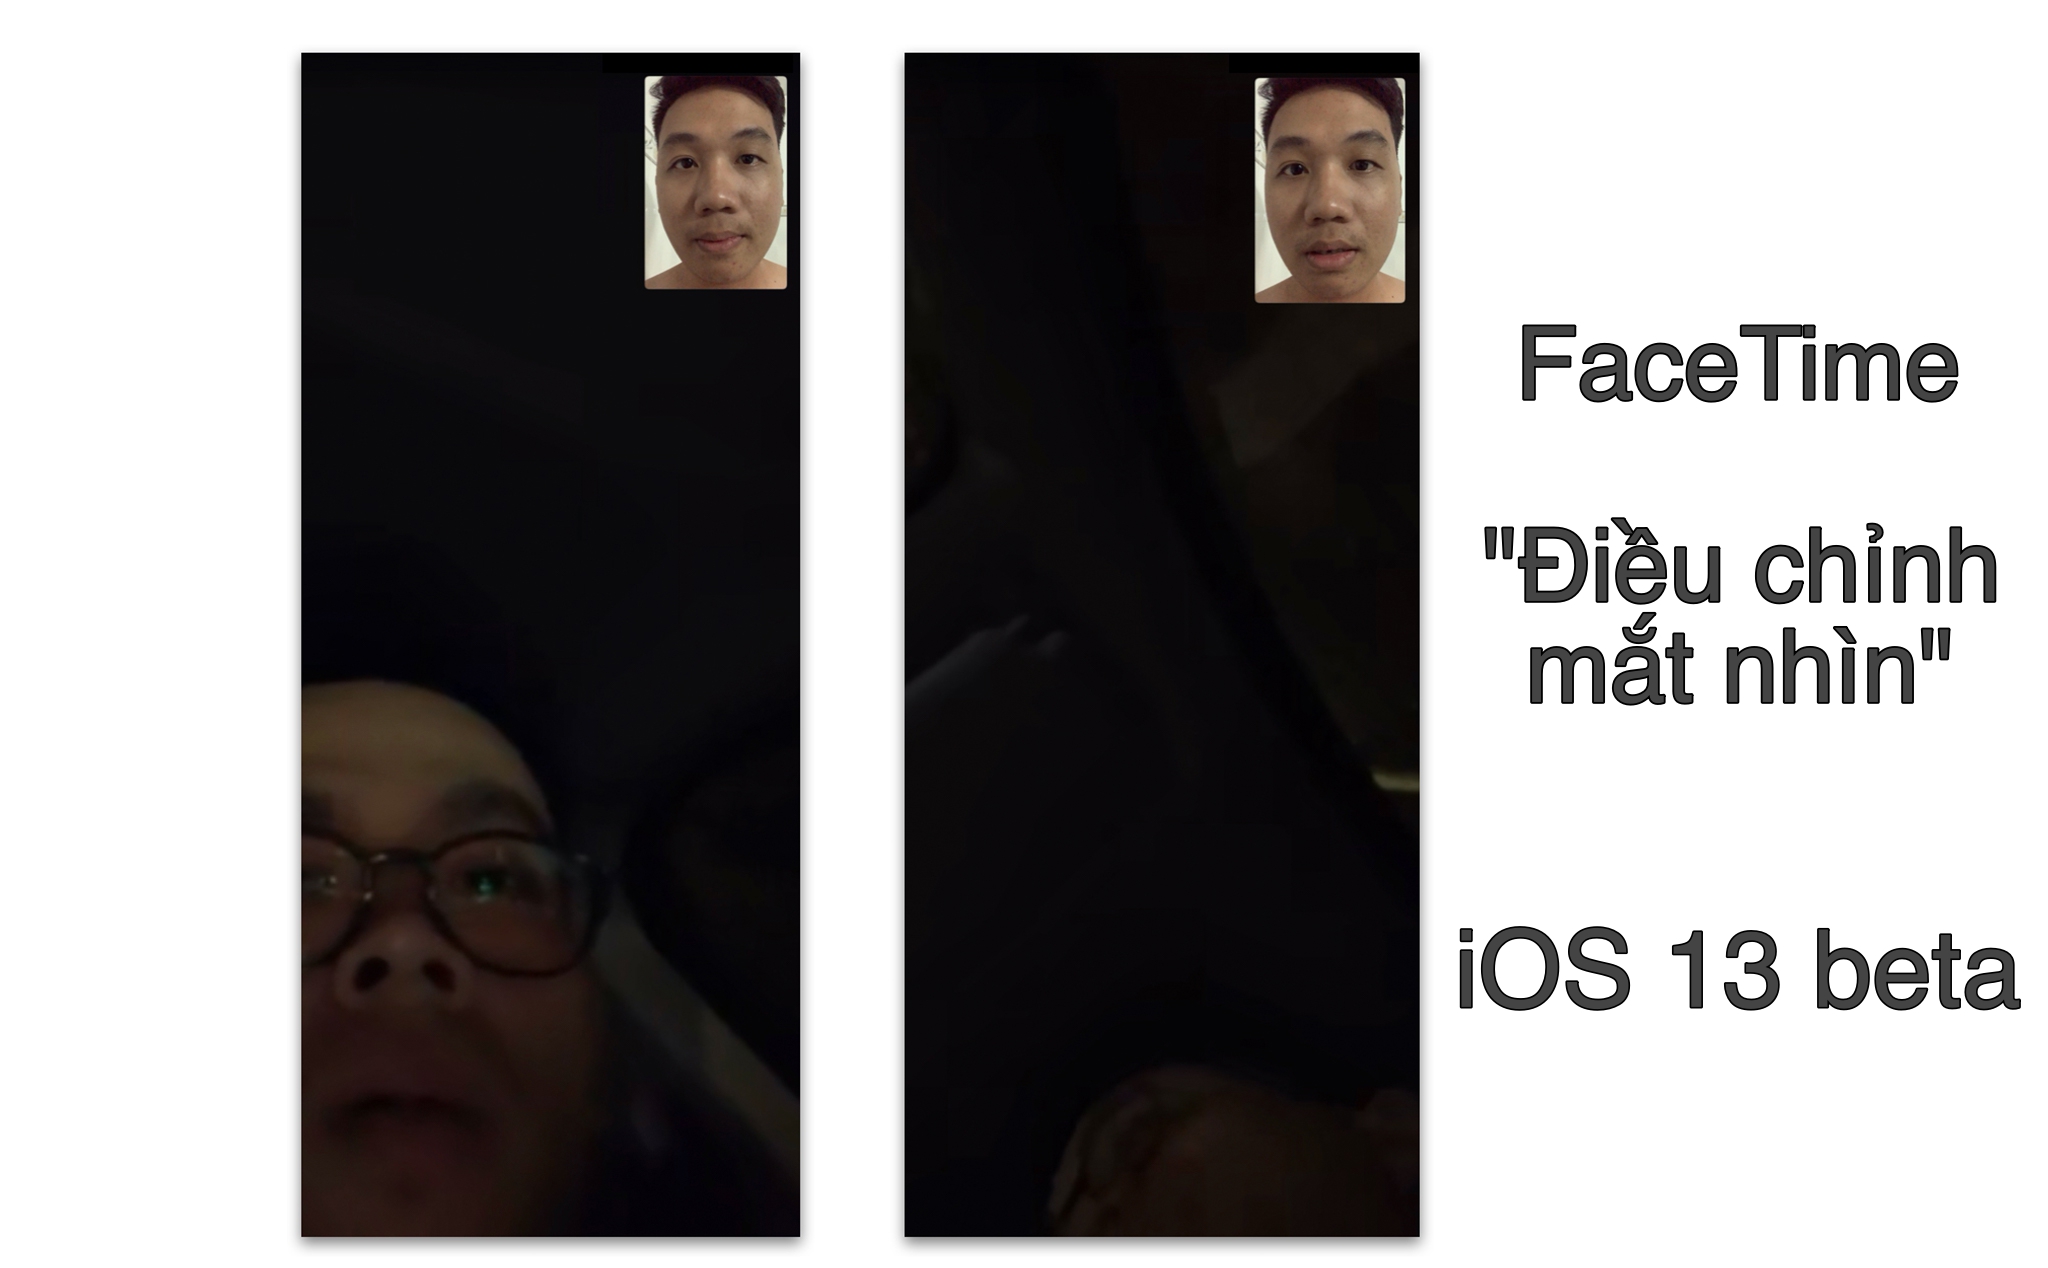 FaceTime trên iOS 13 tạo giả lập mắt người luôn nhìn thẳng vào camera